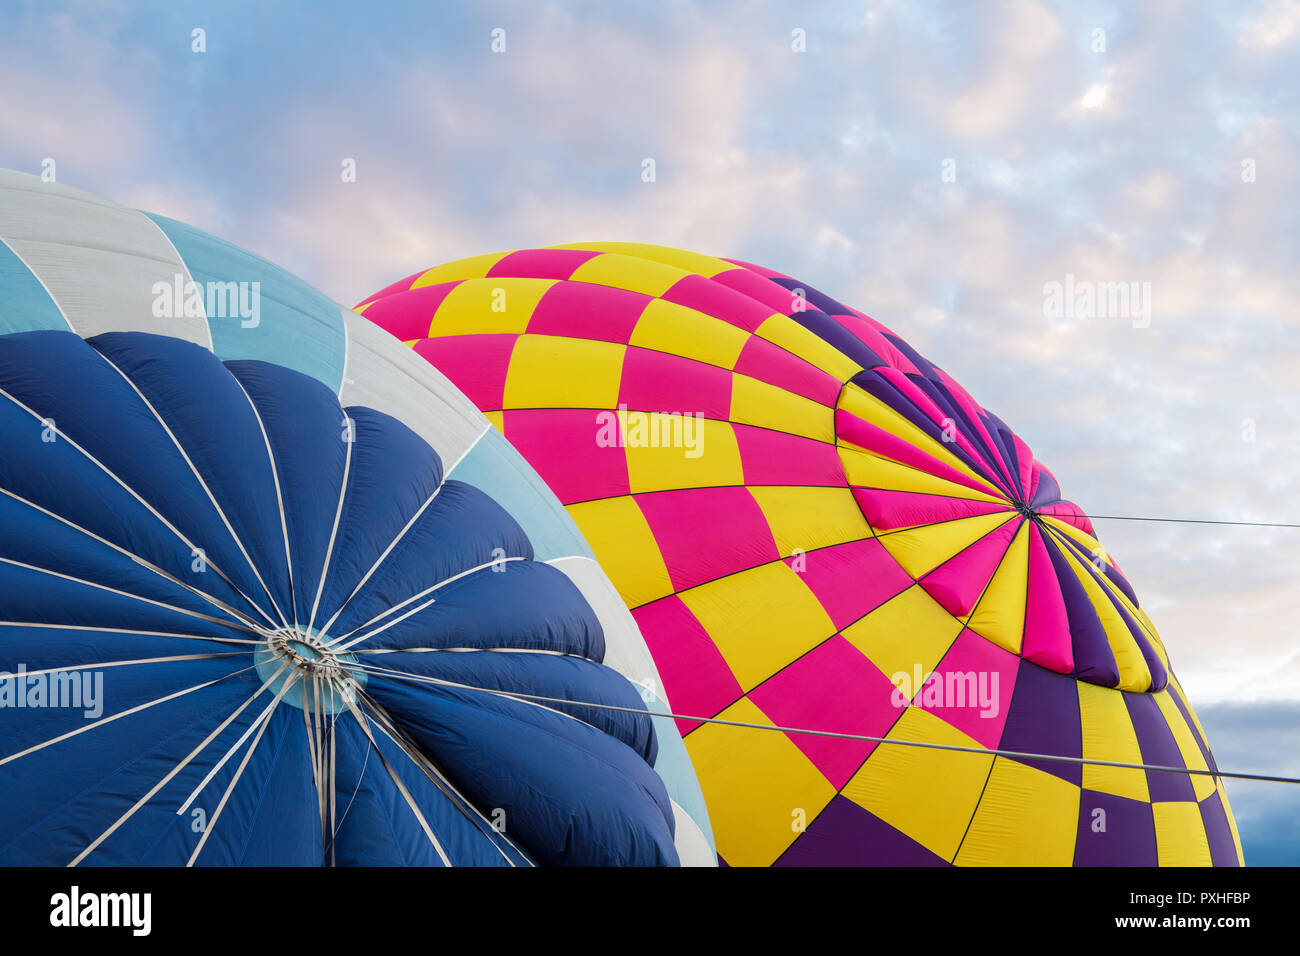 Bunte Heißluftballons in lebendigen Farben Blau, Lila, Rosa, Gelb und unter einem schönen Himmel am frühen Morgen bei Sonnenaufgang aufgepumpt werden Stockfoto